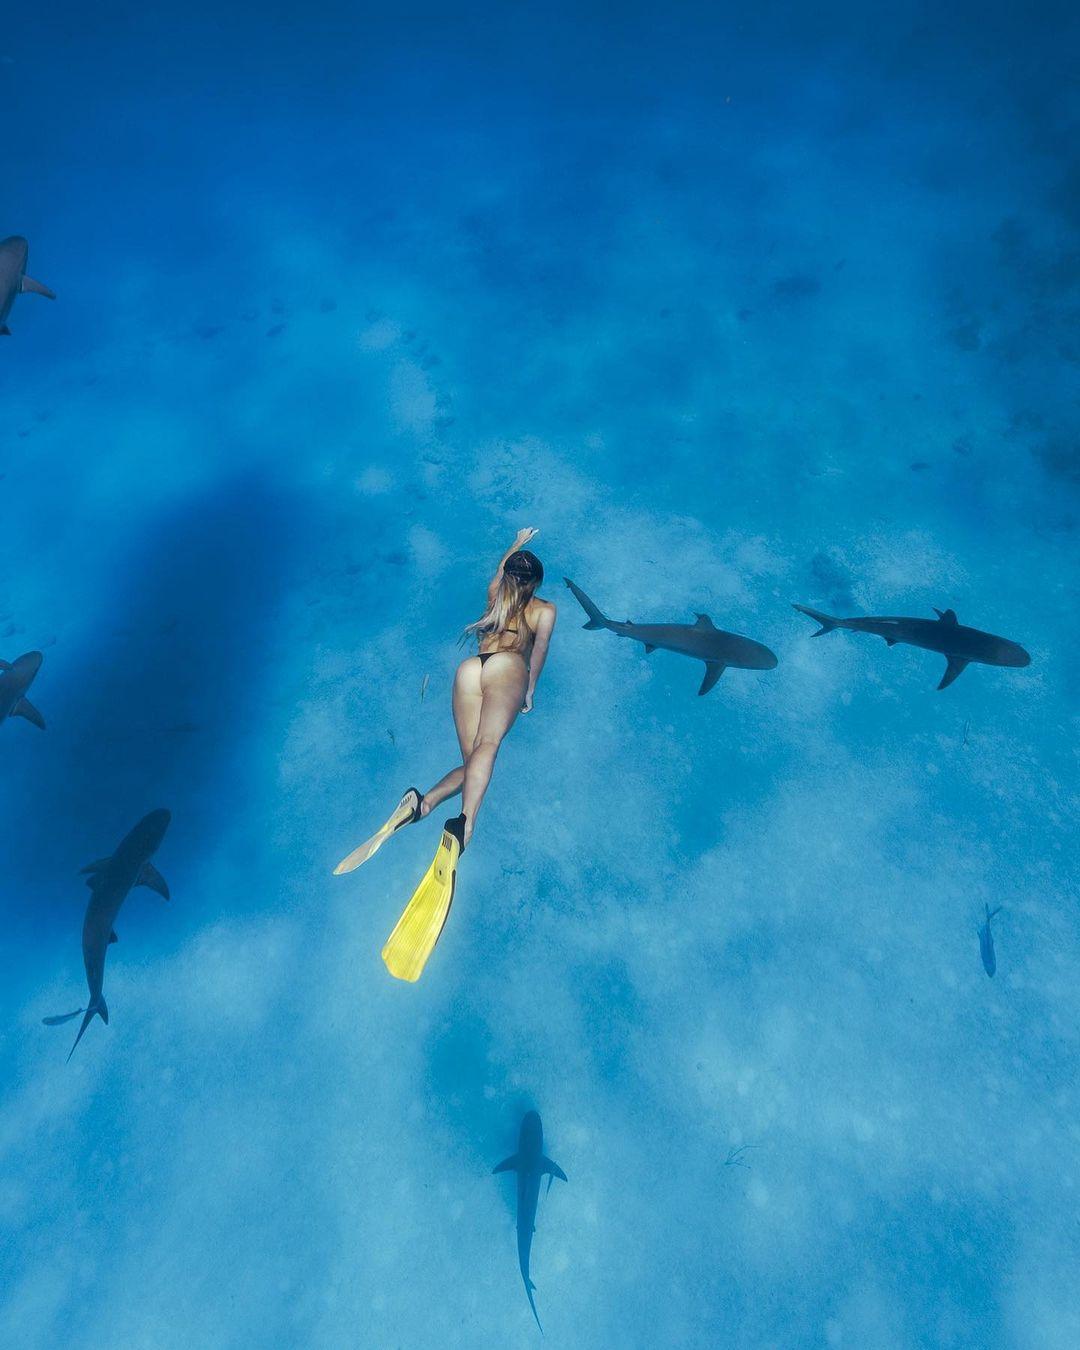 Corinna Kopf swimming with sharks.